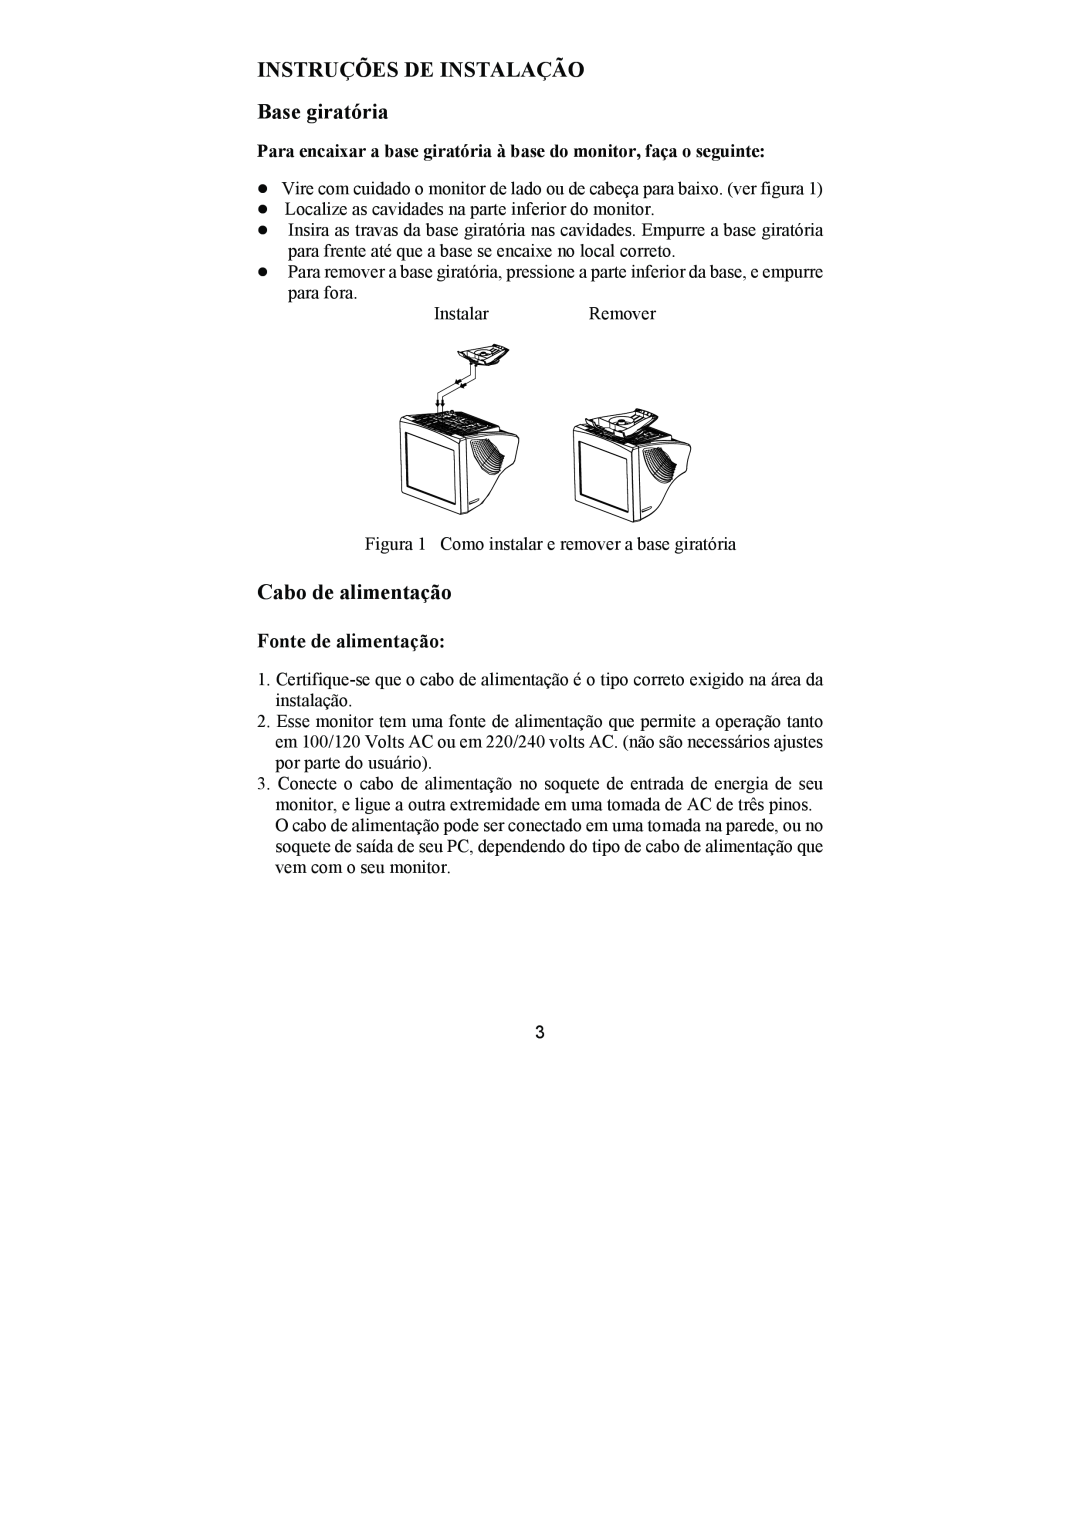 Philips 107E69 manual INSTRUÇÕES DE INSTALAÇÃO Base giratória, Cabo de alimentação, Fonte de alimentação 